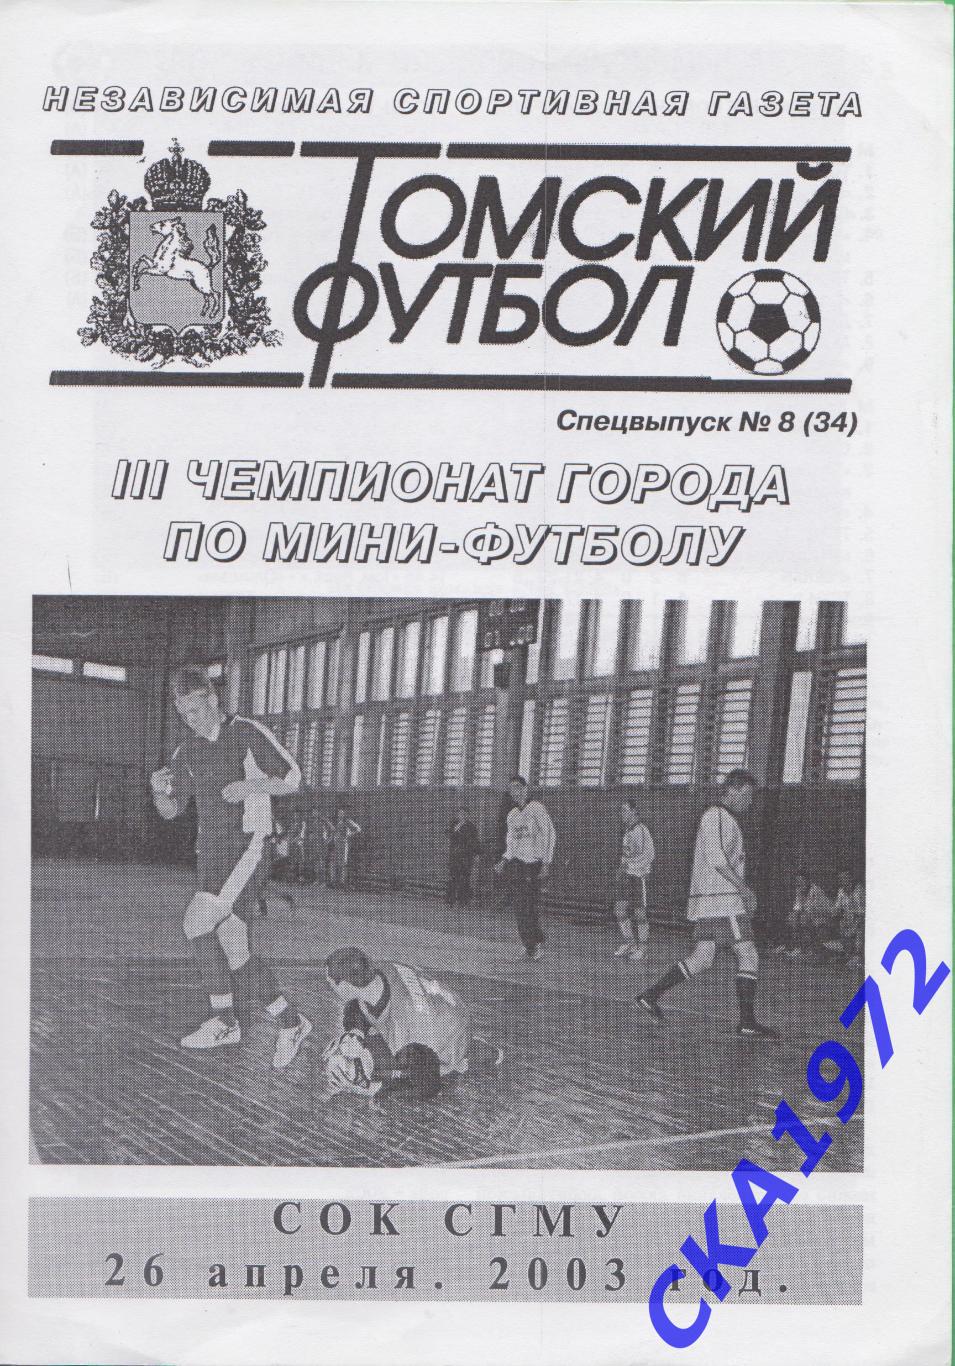 прорамма 3 чемпионат города по мини-футболу Томск 26.04.2003 +++